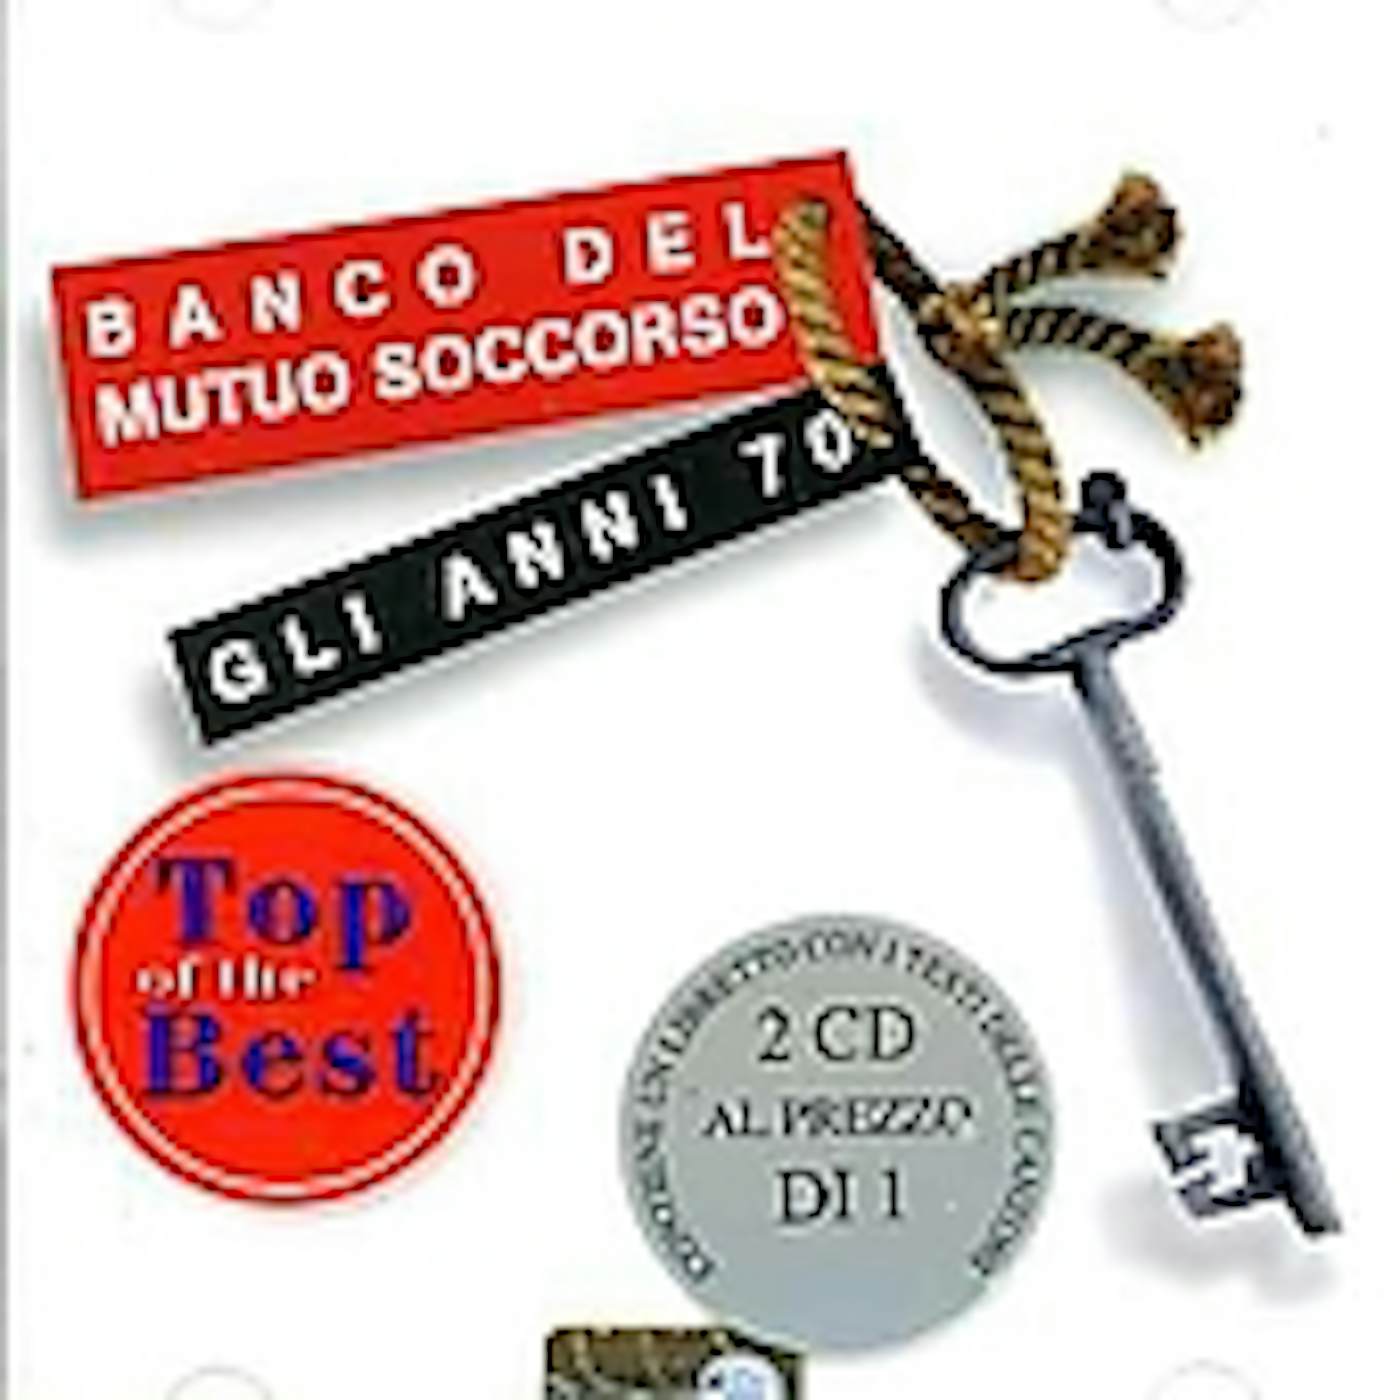 Banco Del Mutuo Soccorso GLI ANNI 70 CD